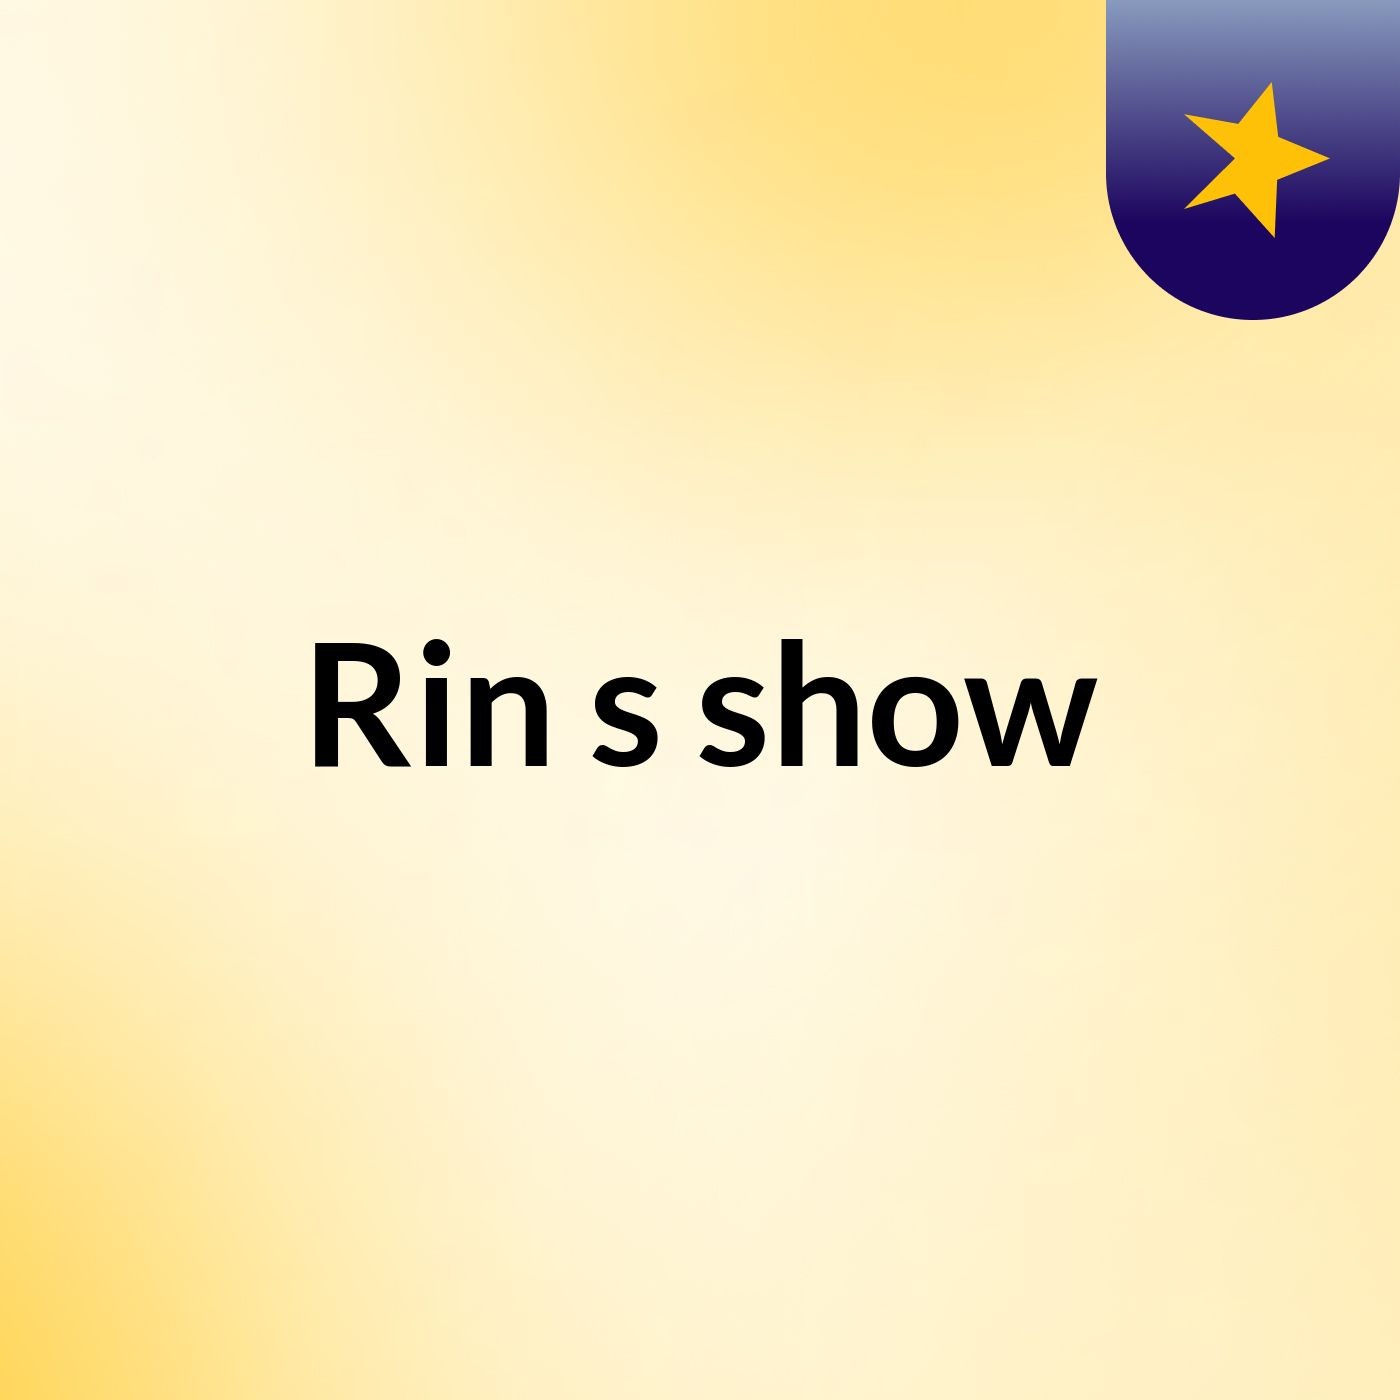 Rin's show